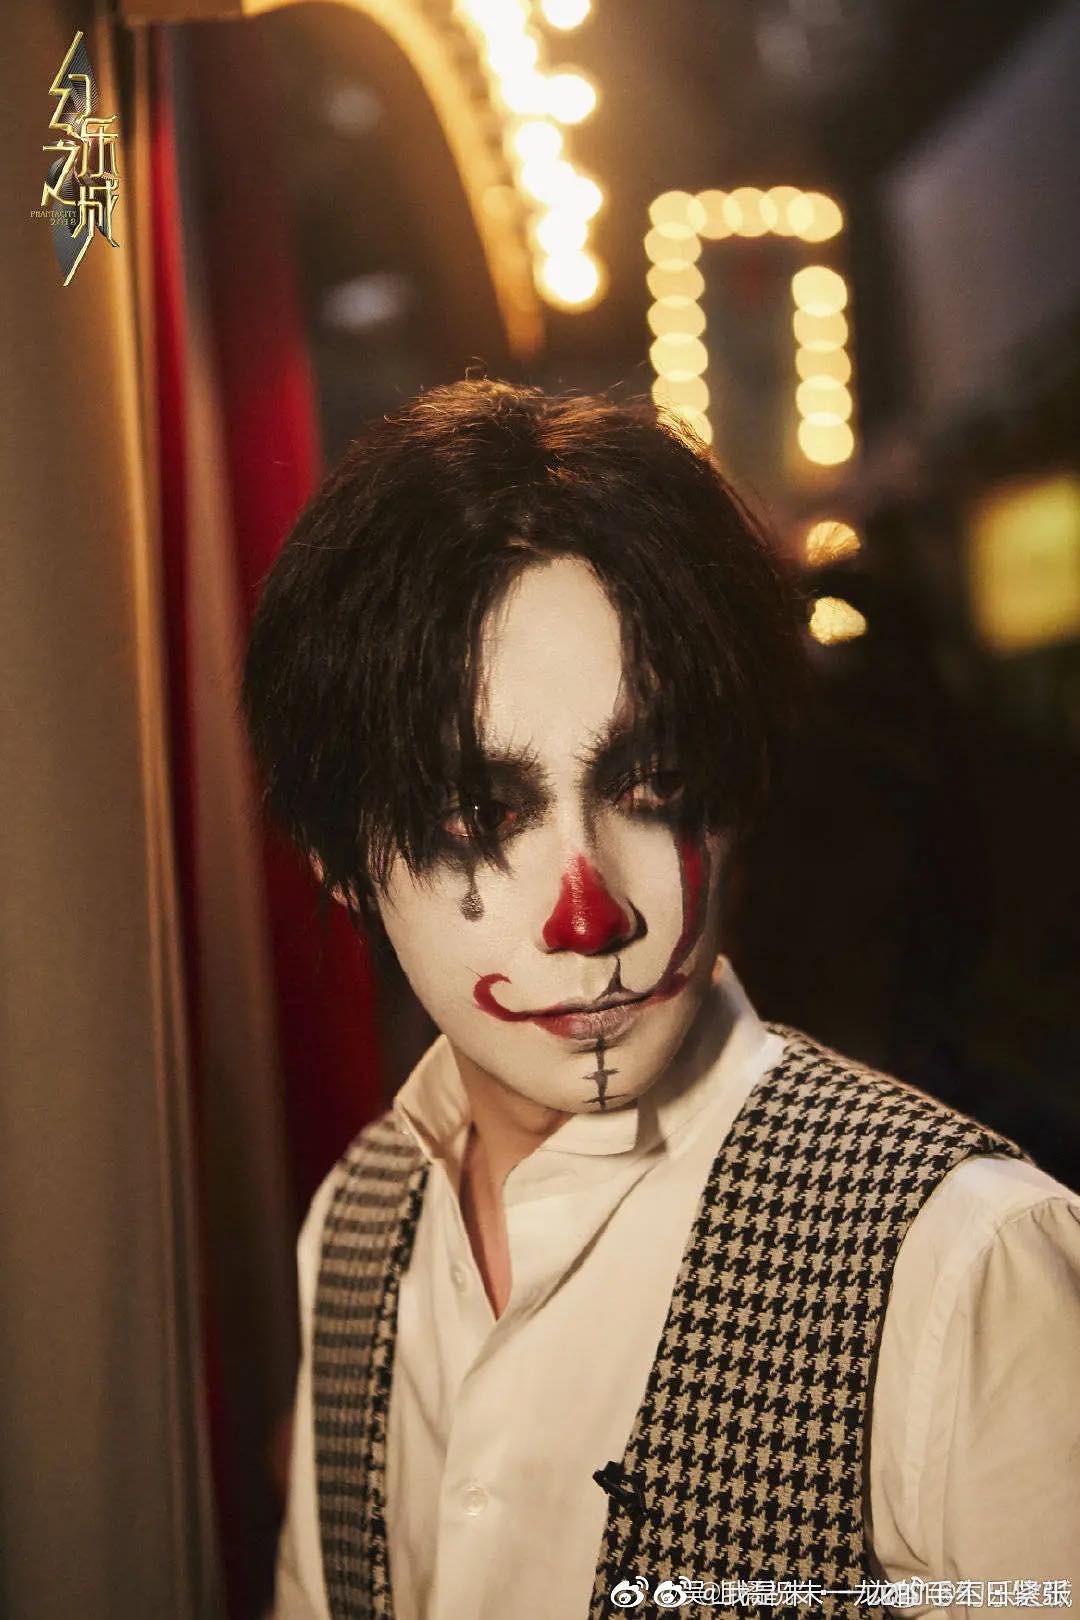 Mỹ nam 'Trấn Hồn' Chu Nhất Long đón Halloween với tạo hình Joker nhưng dù hoạ mặt kinh dị thì vẫn không che nổi sự đẹp trai của anh chàng.